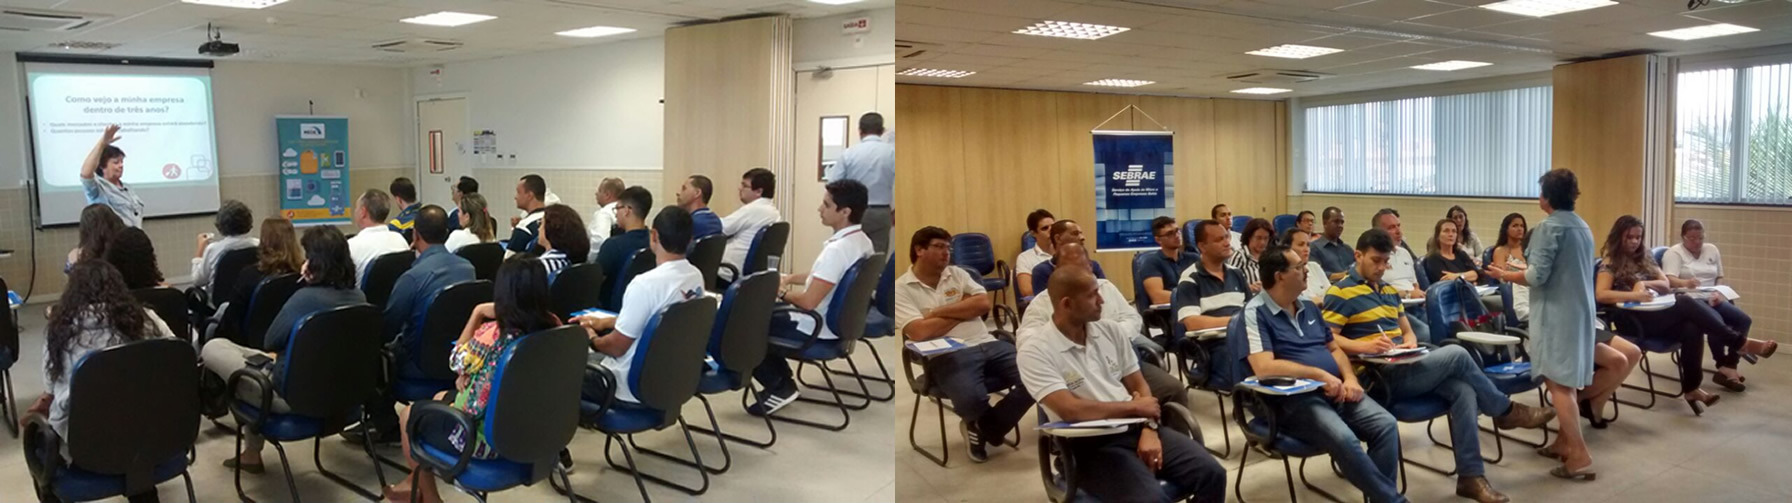 Sebrae realiza workshop para gestão empresarial em Porto Seguro 5